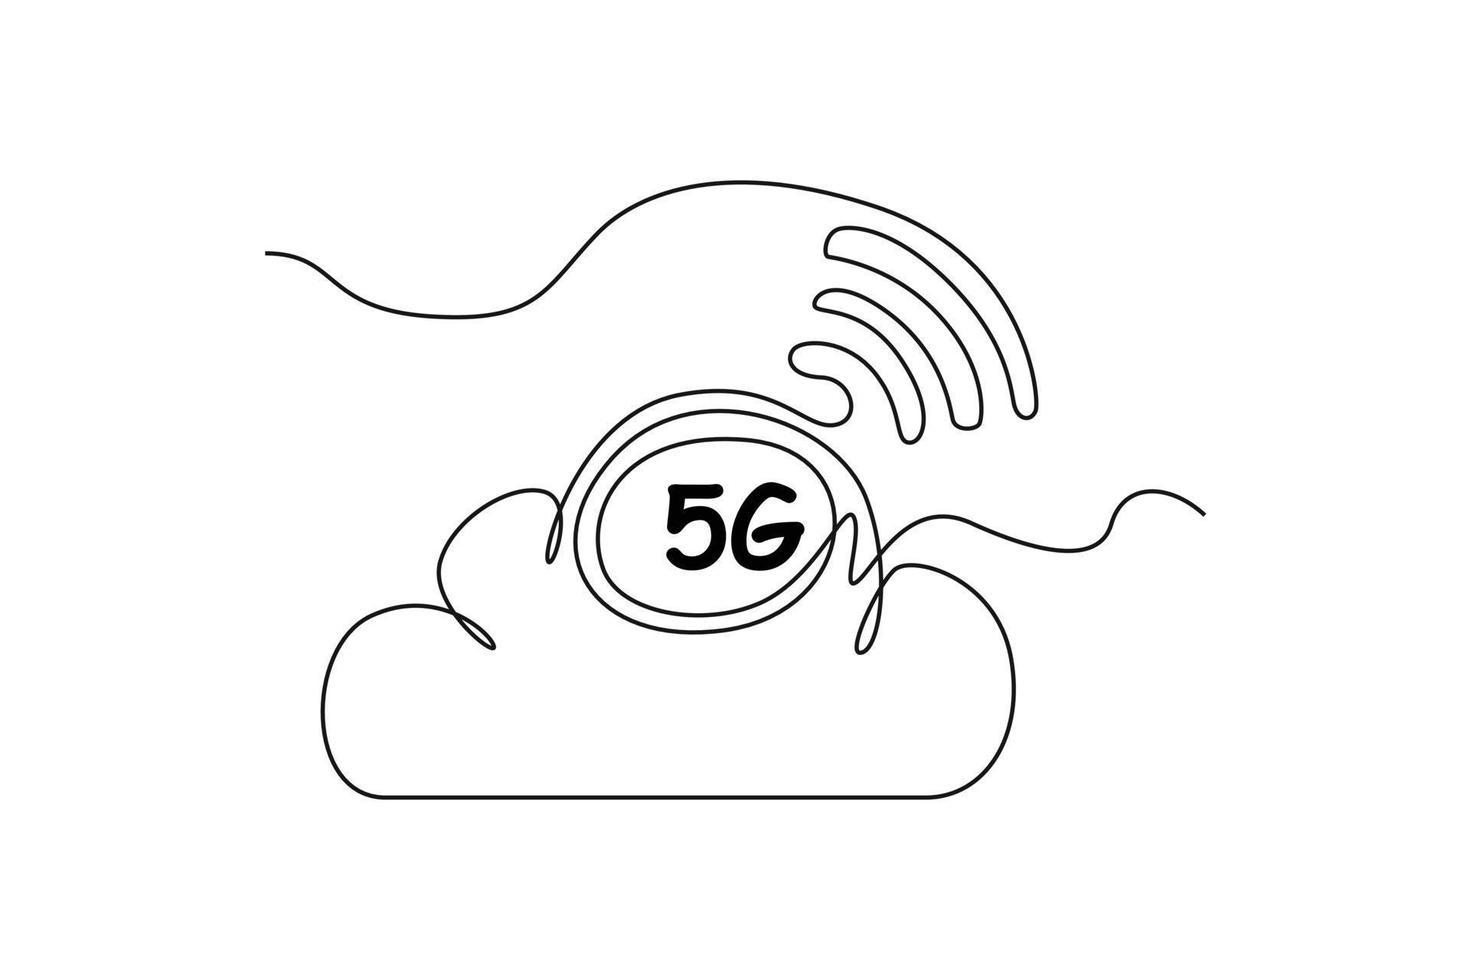 doorlopend een lijn tekening 5g in wolk netwerk. hoge snelheid mobiel internetten. 5g technologie concept. single lijn trek ontwerp vector grafisch illustratie.